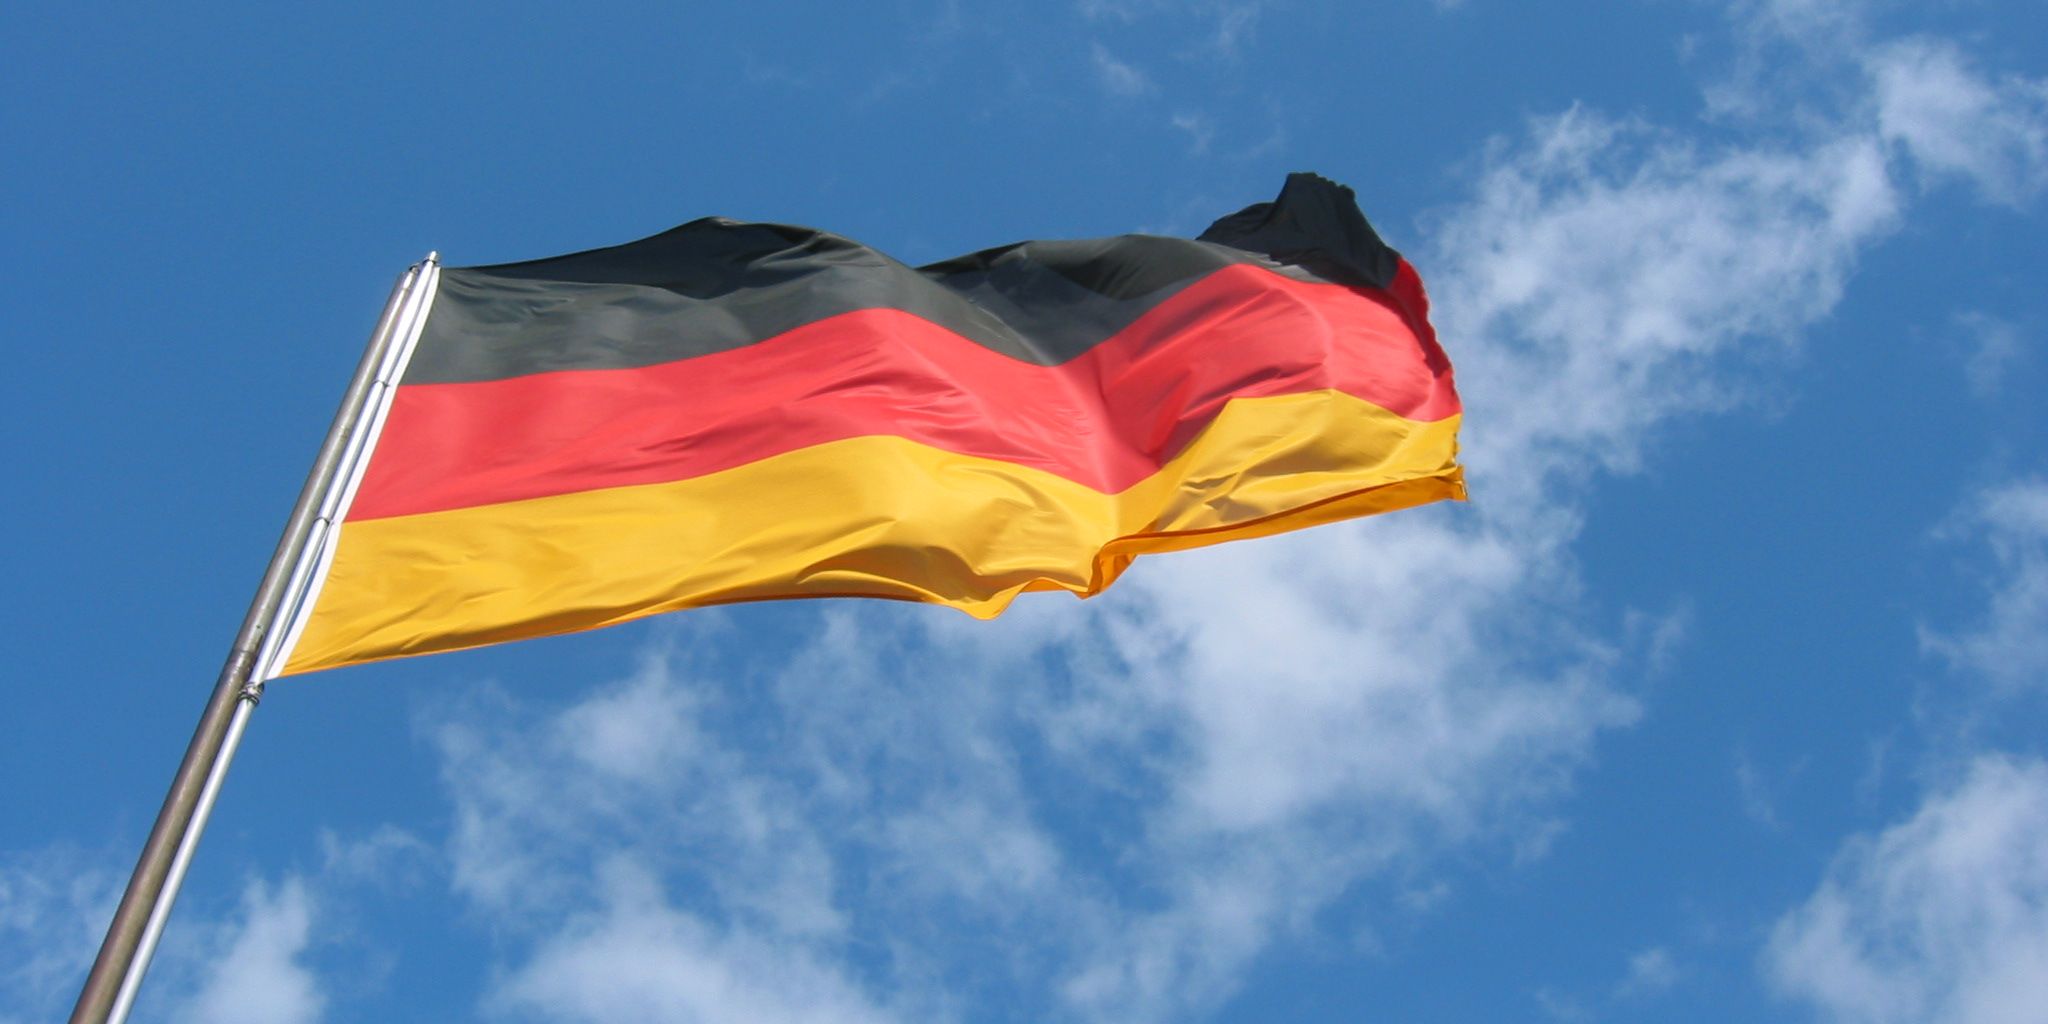 Τι πρέπει να ξέρετε για τη Γερμανία πριν την επισκεφθείτε